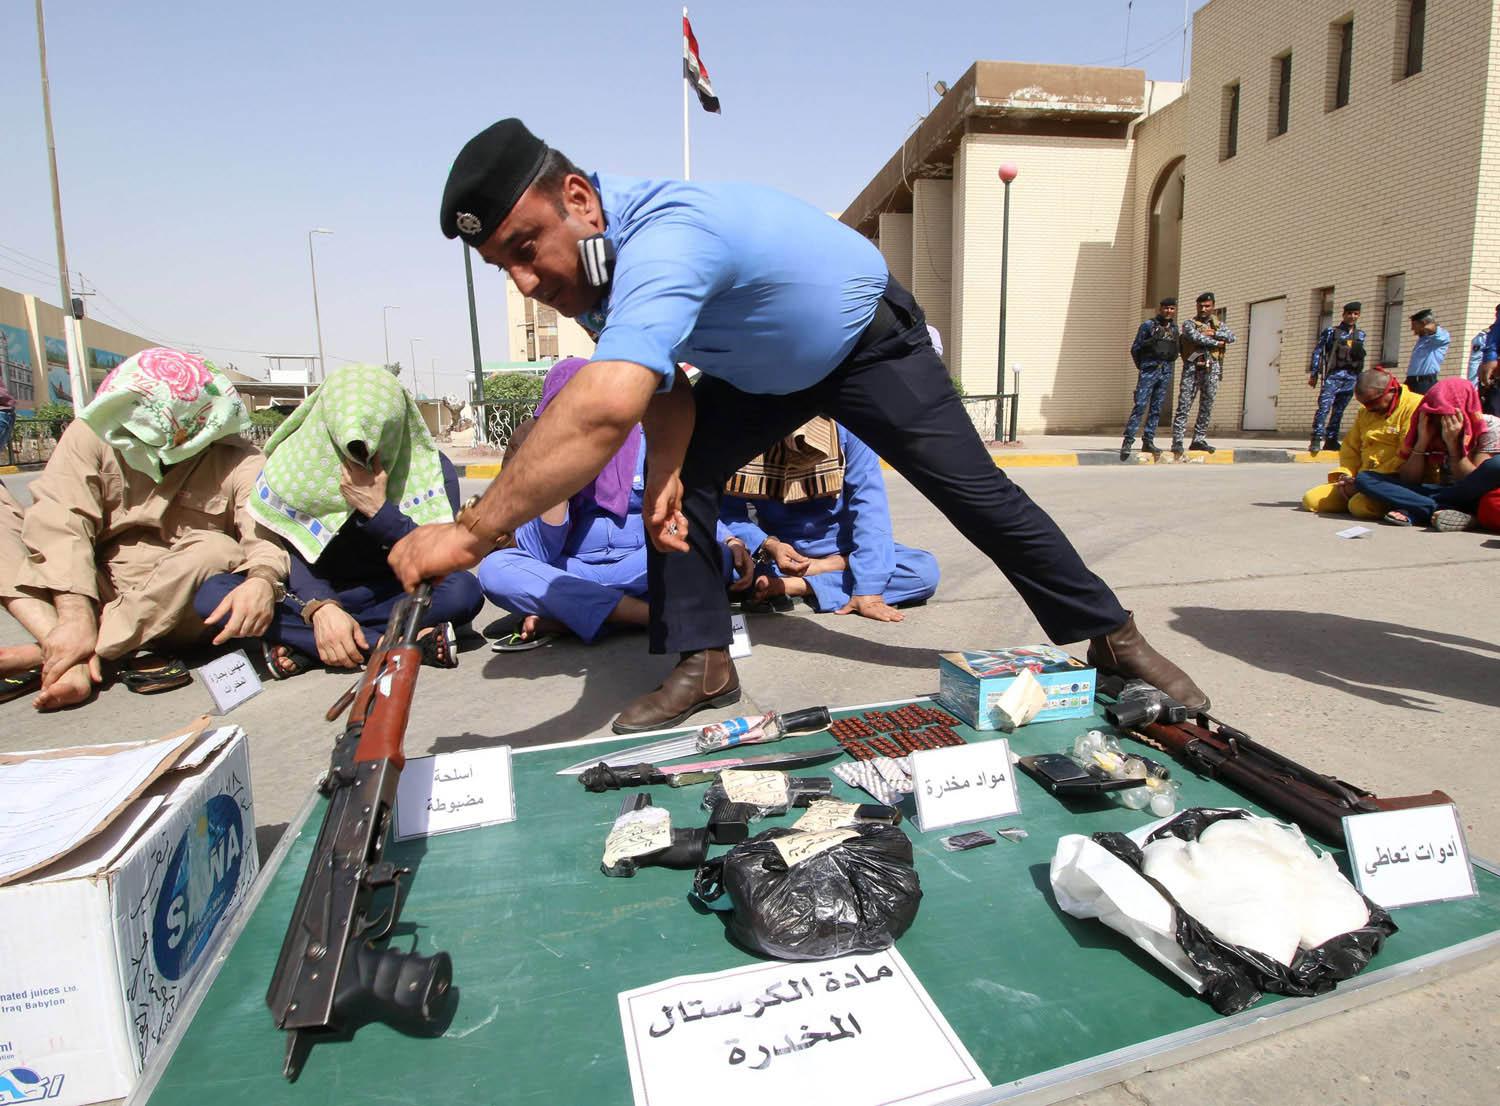 شرطي عراقي يعرض أحرازا قضائية لمخدرات وسلاح مع عصابة تهريب للمخدرات